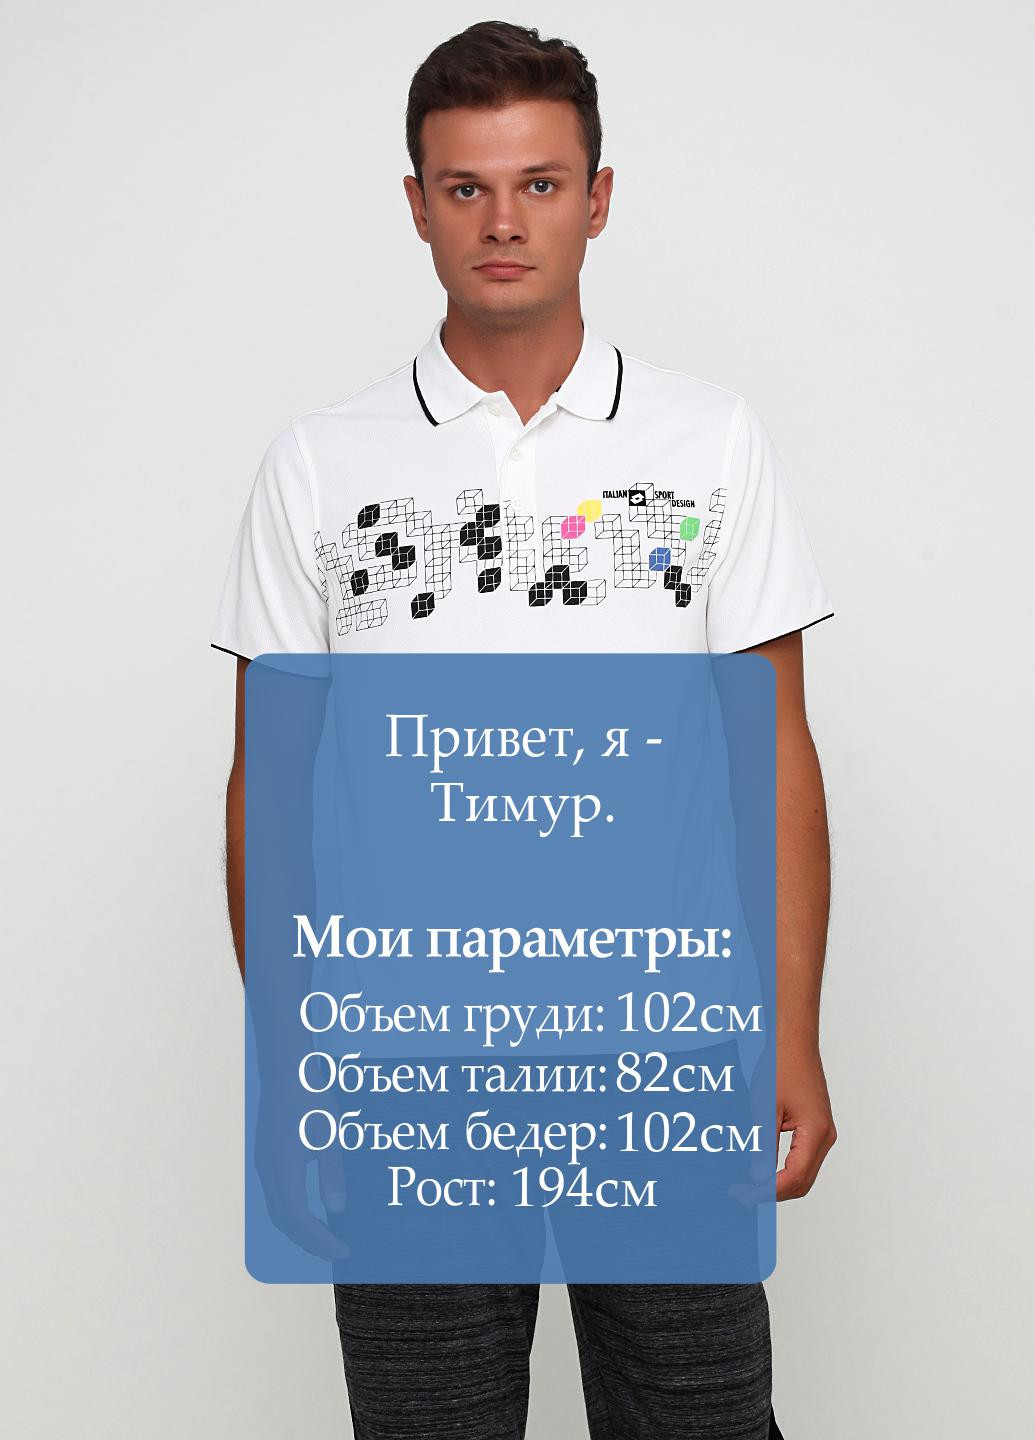 Белая футболка-футболка для мужчин Lotto с рисунком